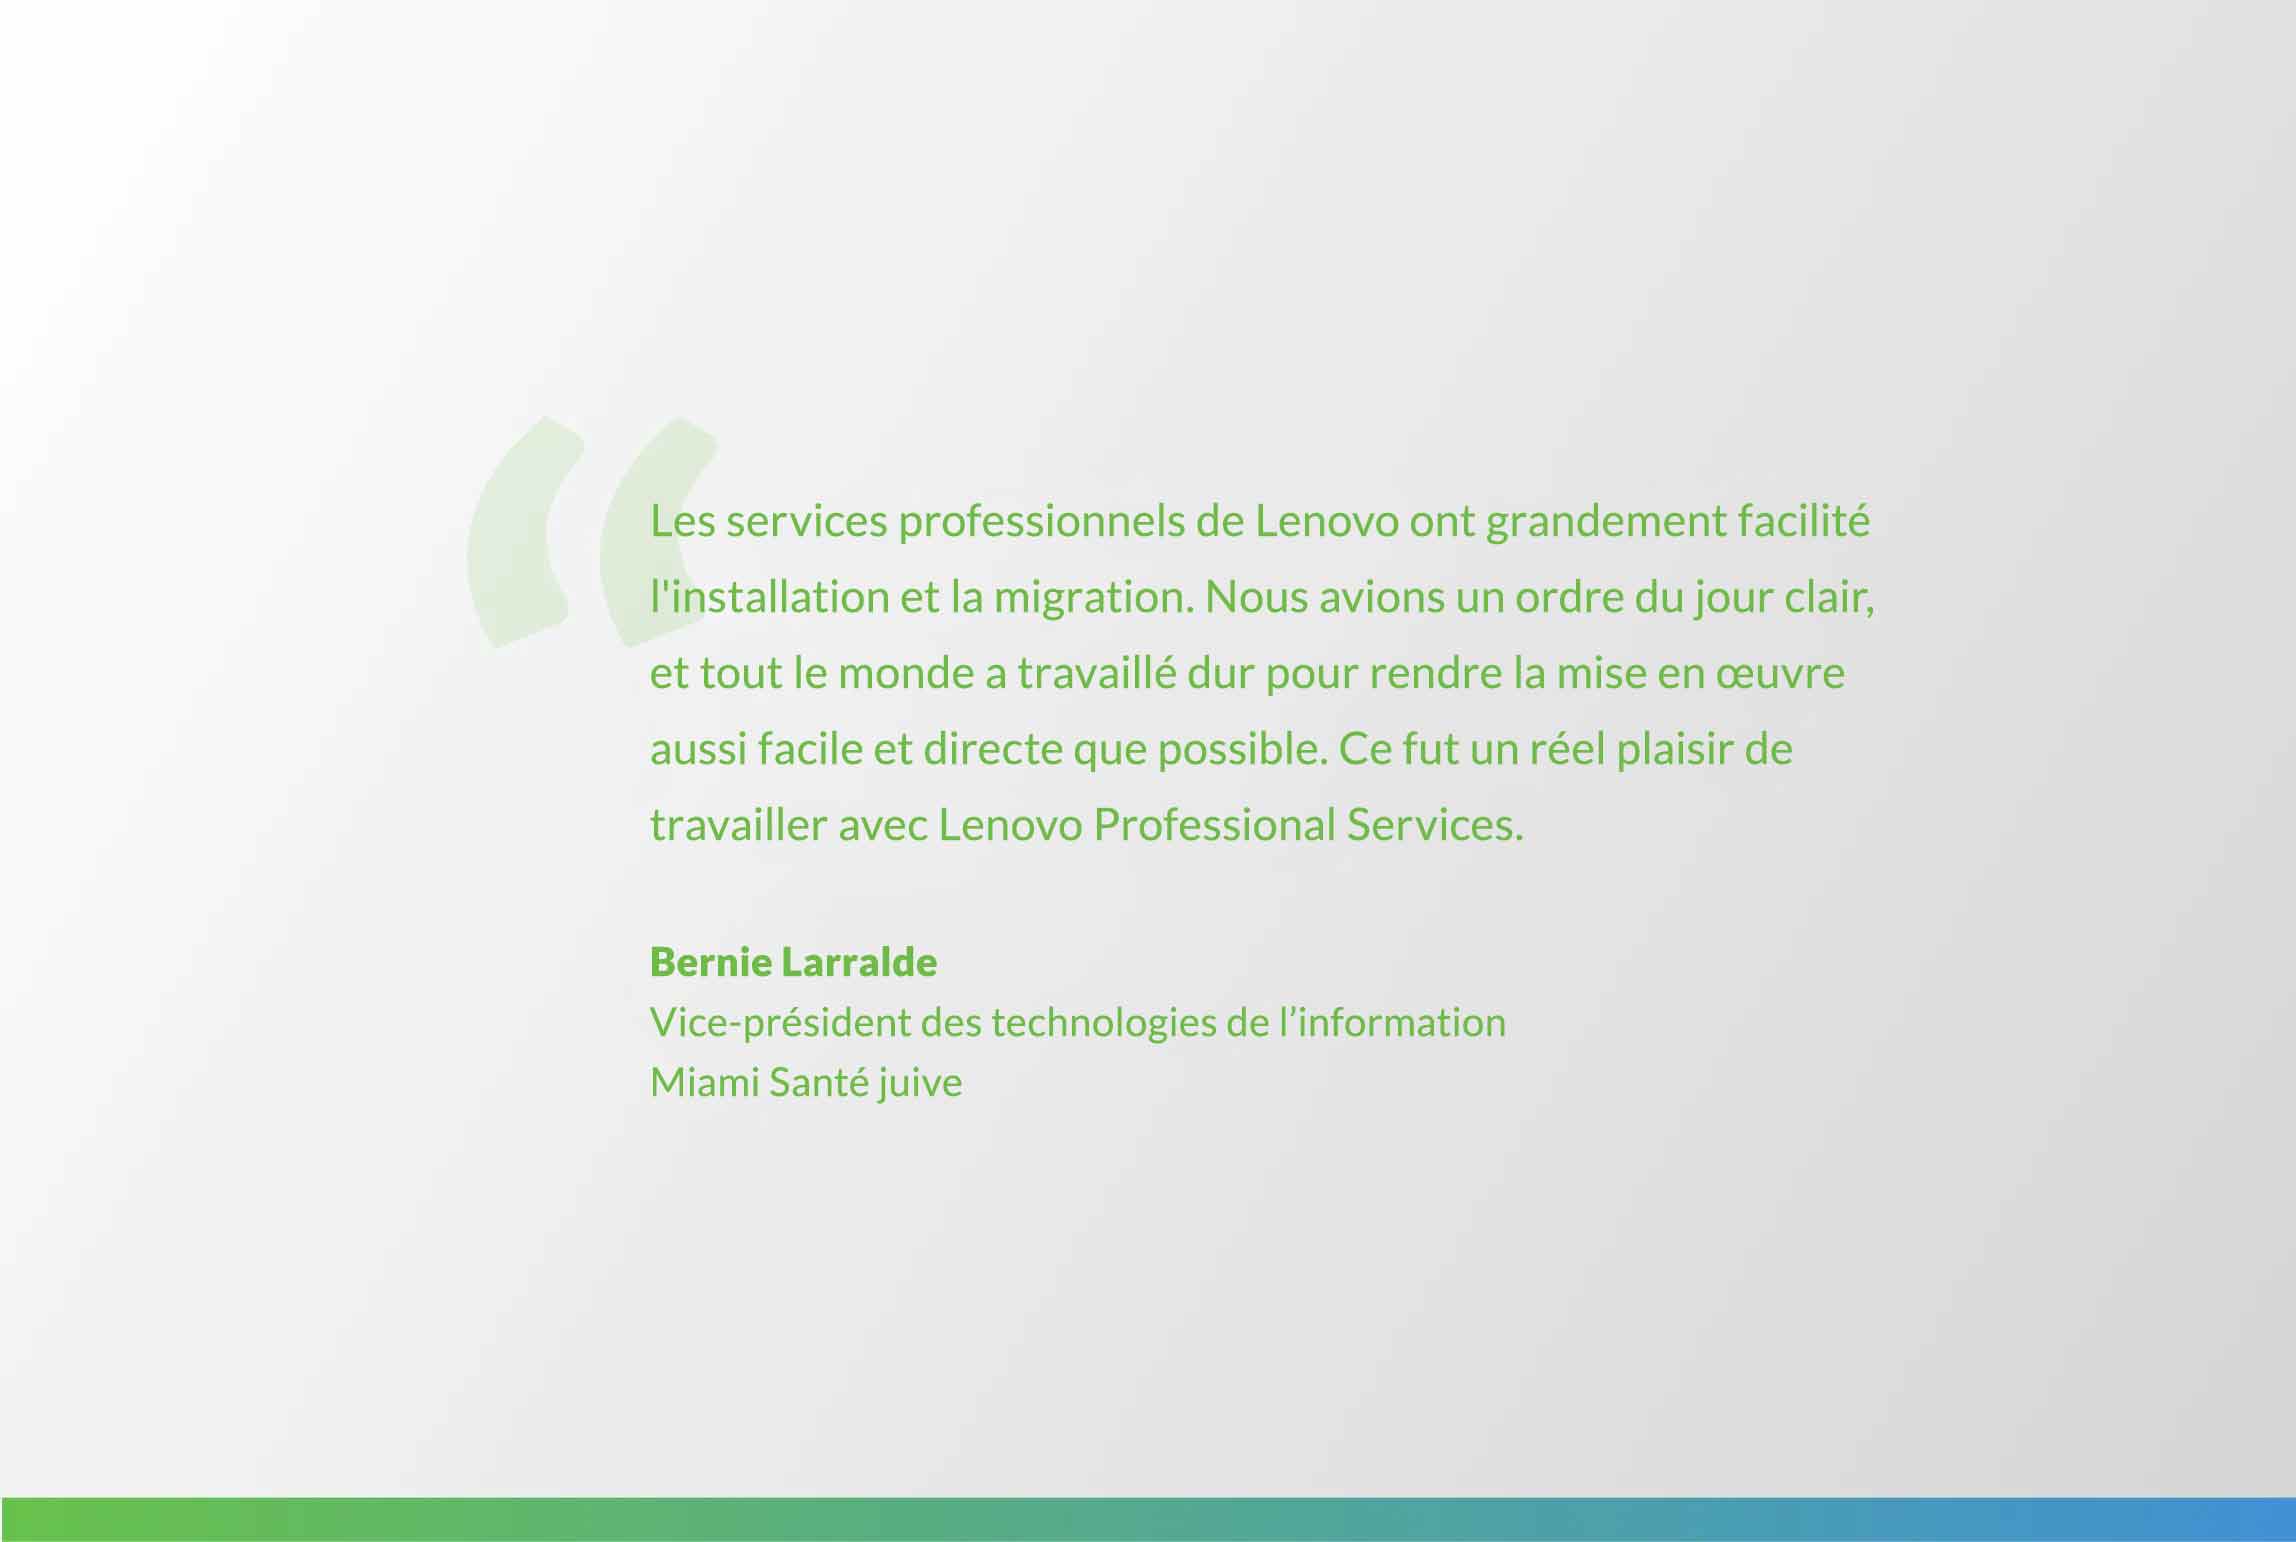 citation de Bernie Larralde : L’équipe de Lenovo Professional Services a rendu l’intallation et la migration un jeu d’enfant. Nous avions un ordre du jour clair, et tout le monde a travaillé dur pour rendre la mise en œuvre aussi facile et directe que possible. Ce fut un réel plaisir de travailler avec Lenovo Professional Services.